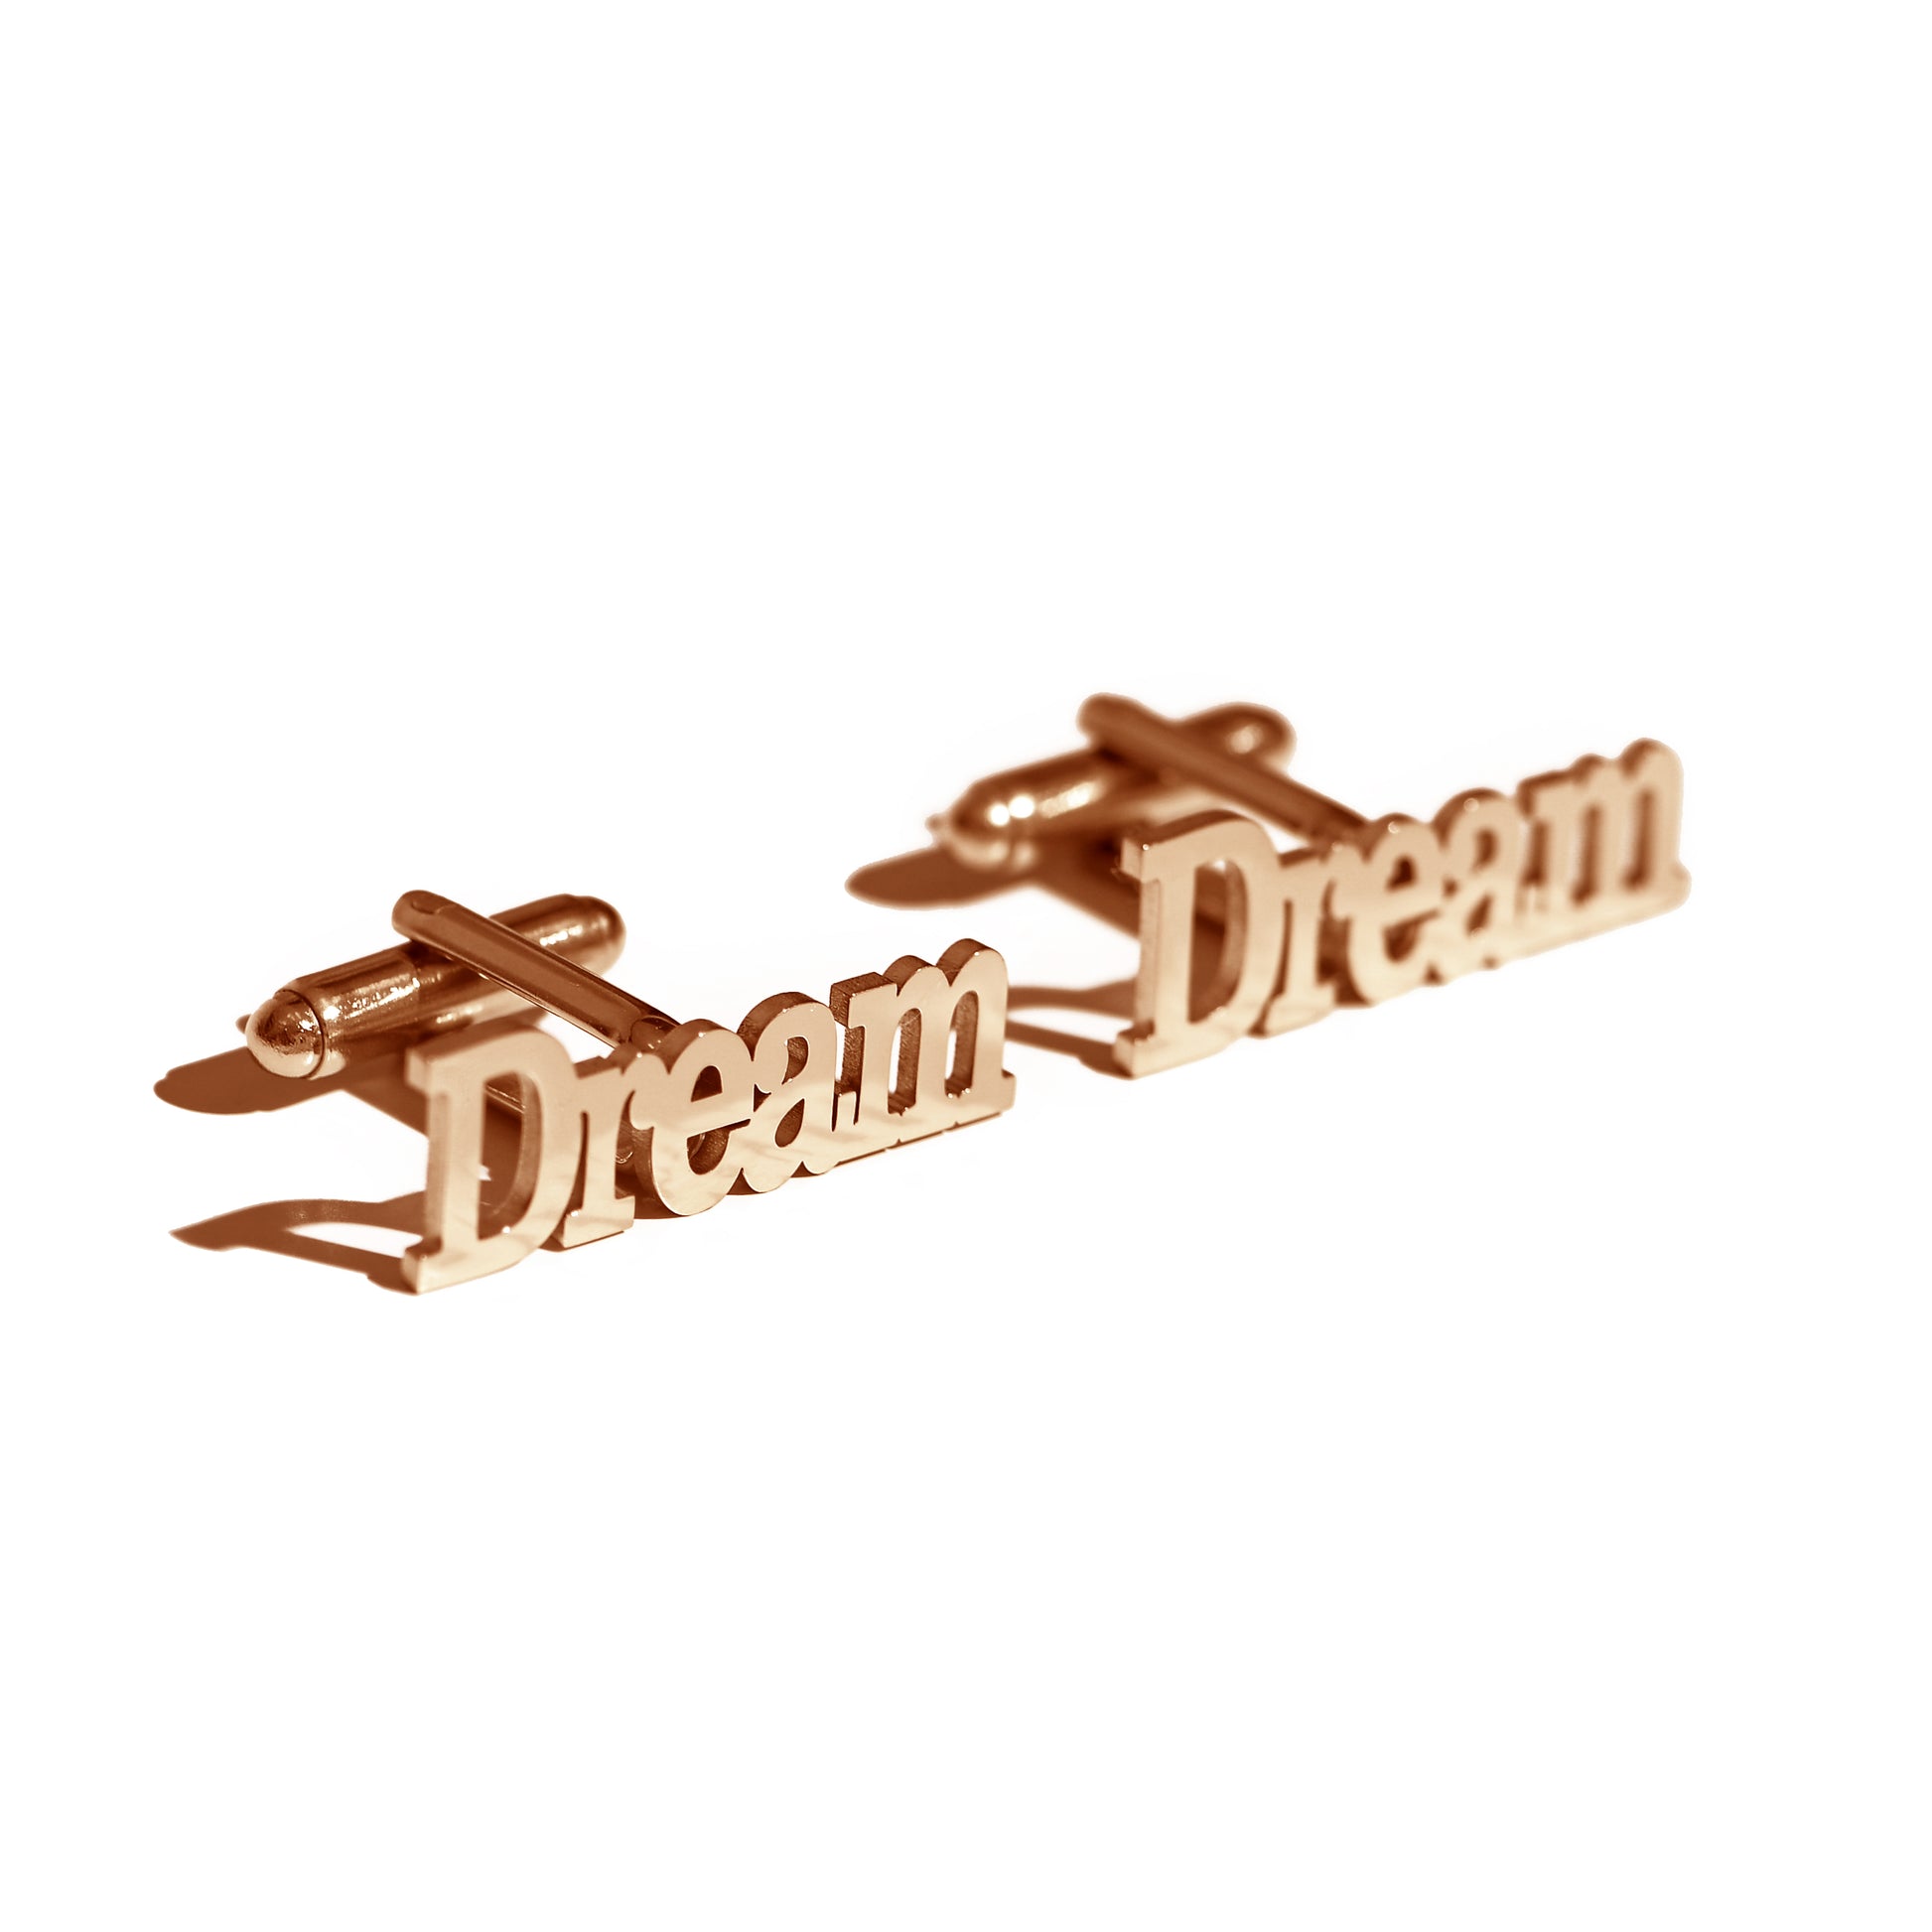 Butoni pentru camasi  cu inscriptia DREAM 2